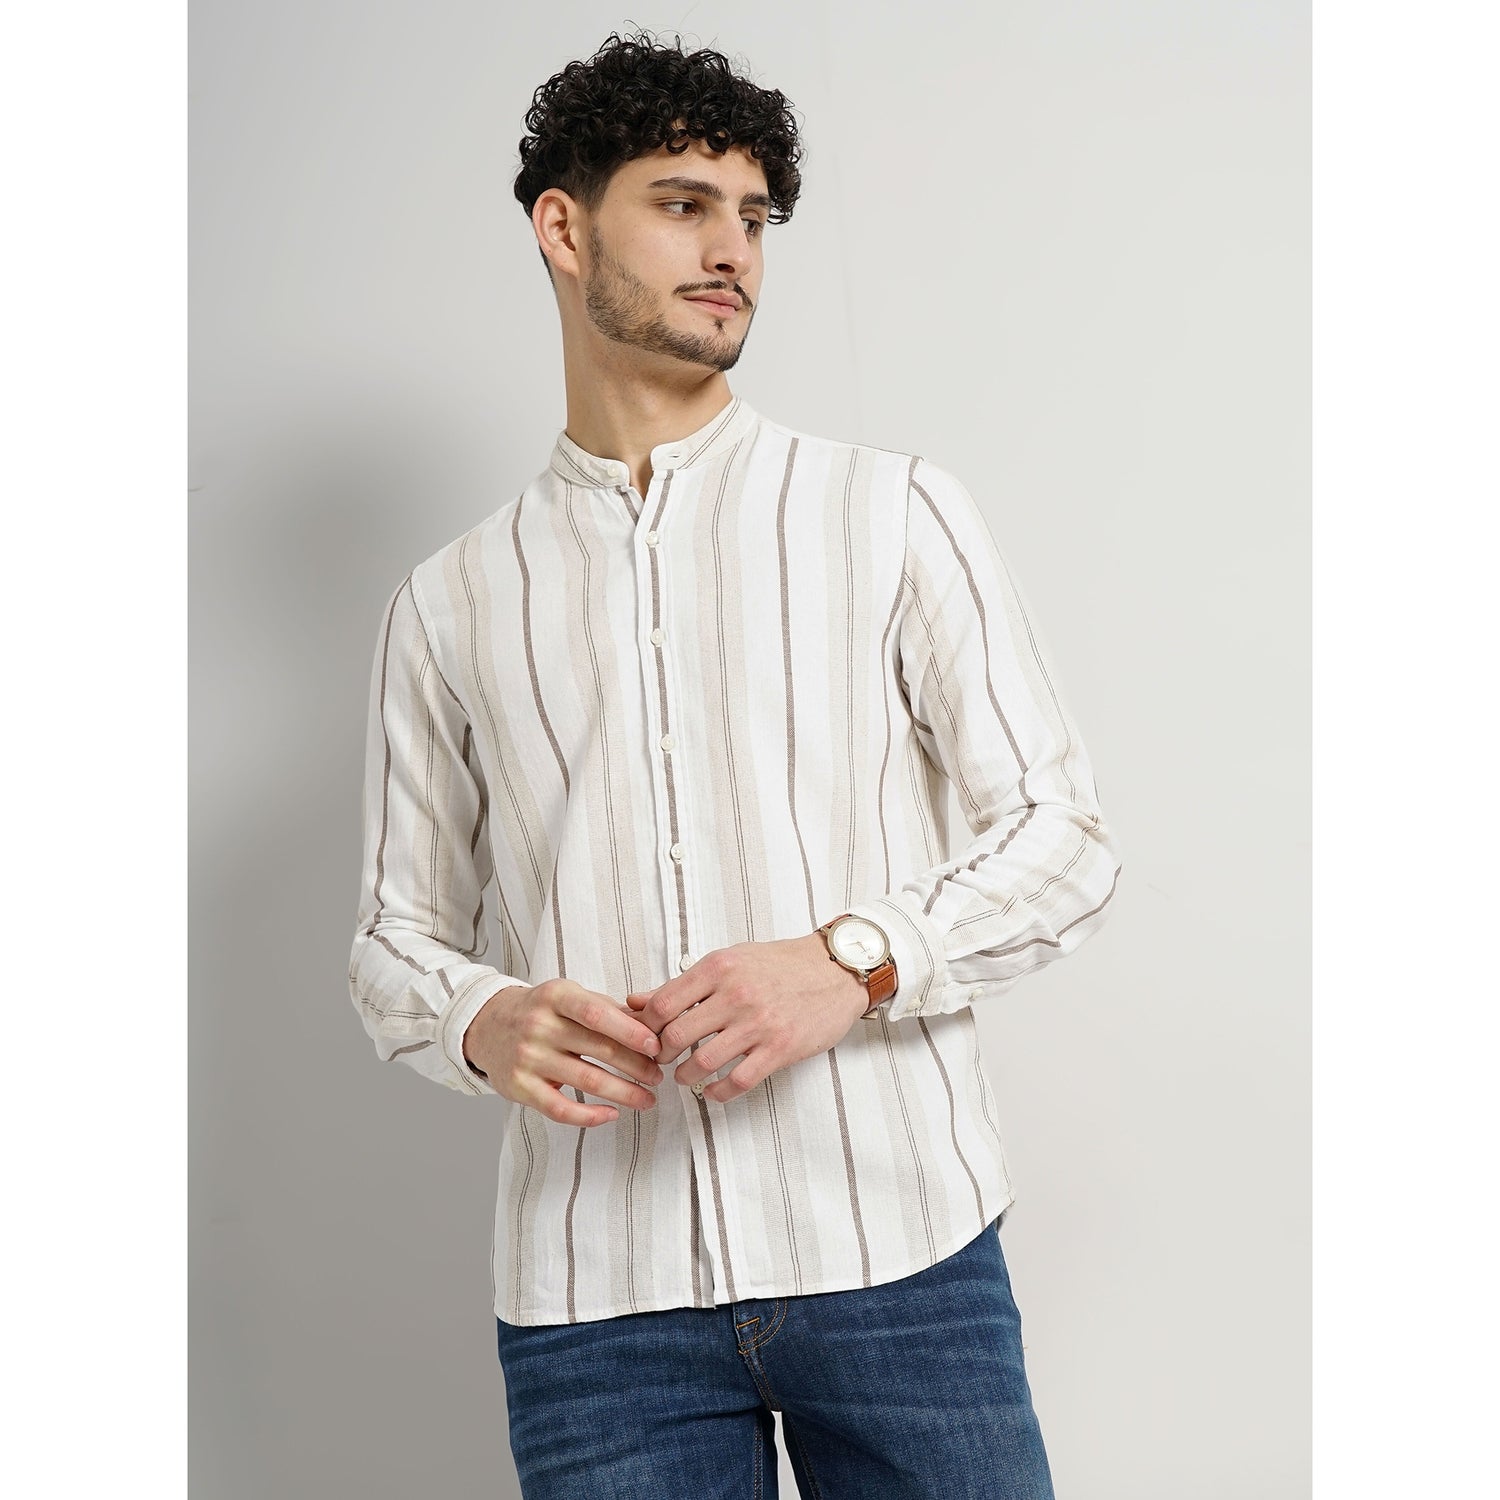 Men Brown Striped Regular Fit Cotton Linen Casual Shirt (GALINLINE)